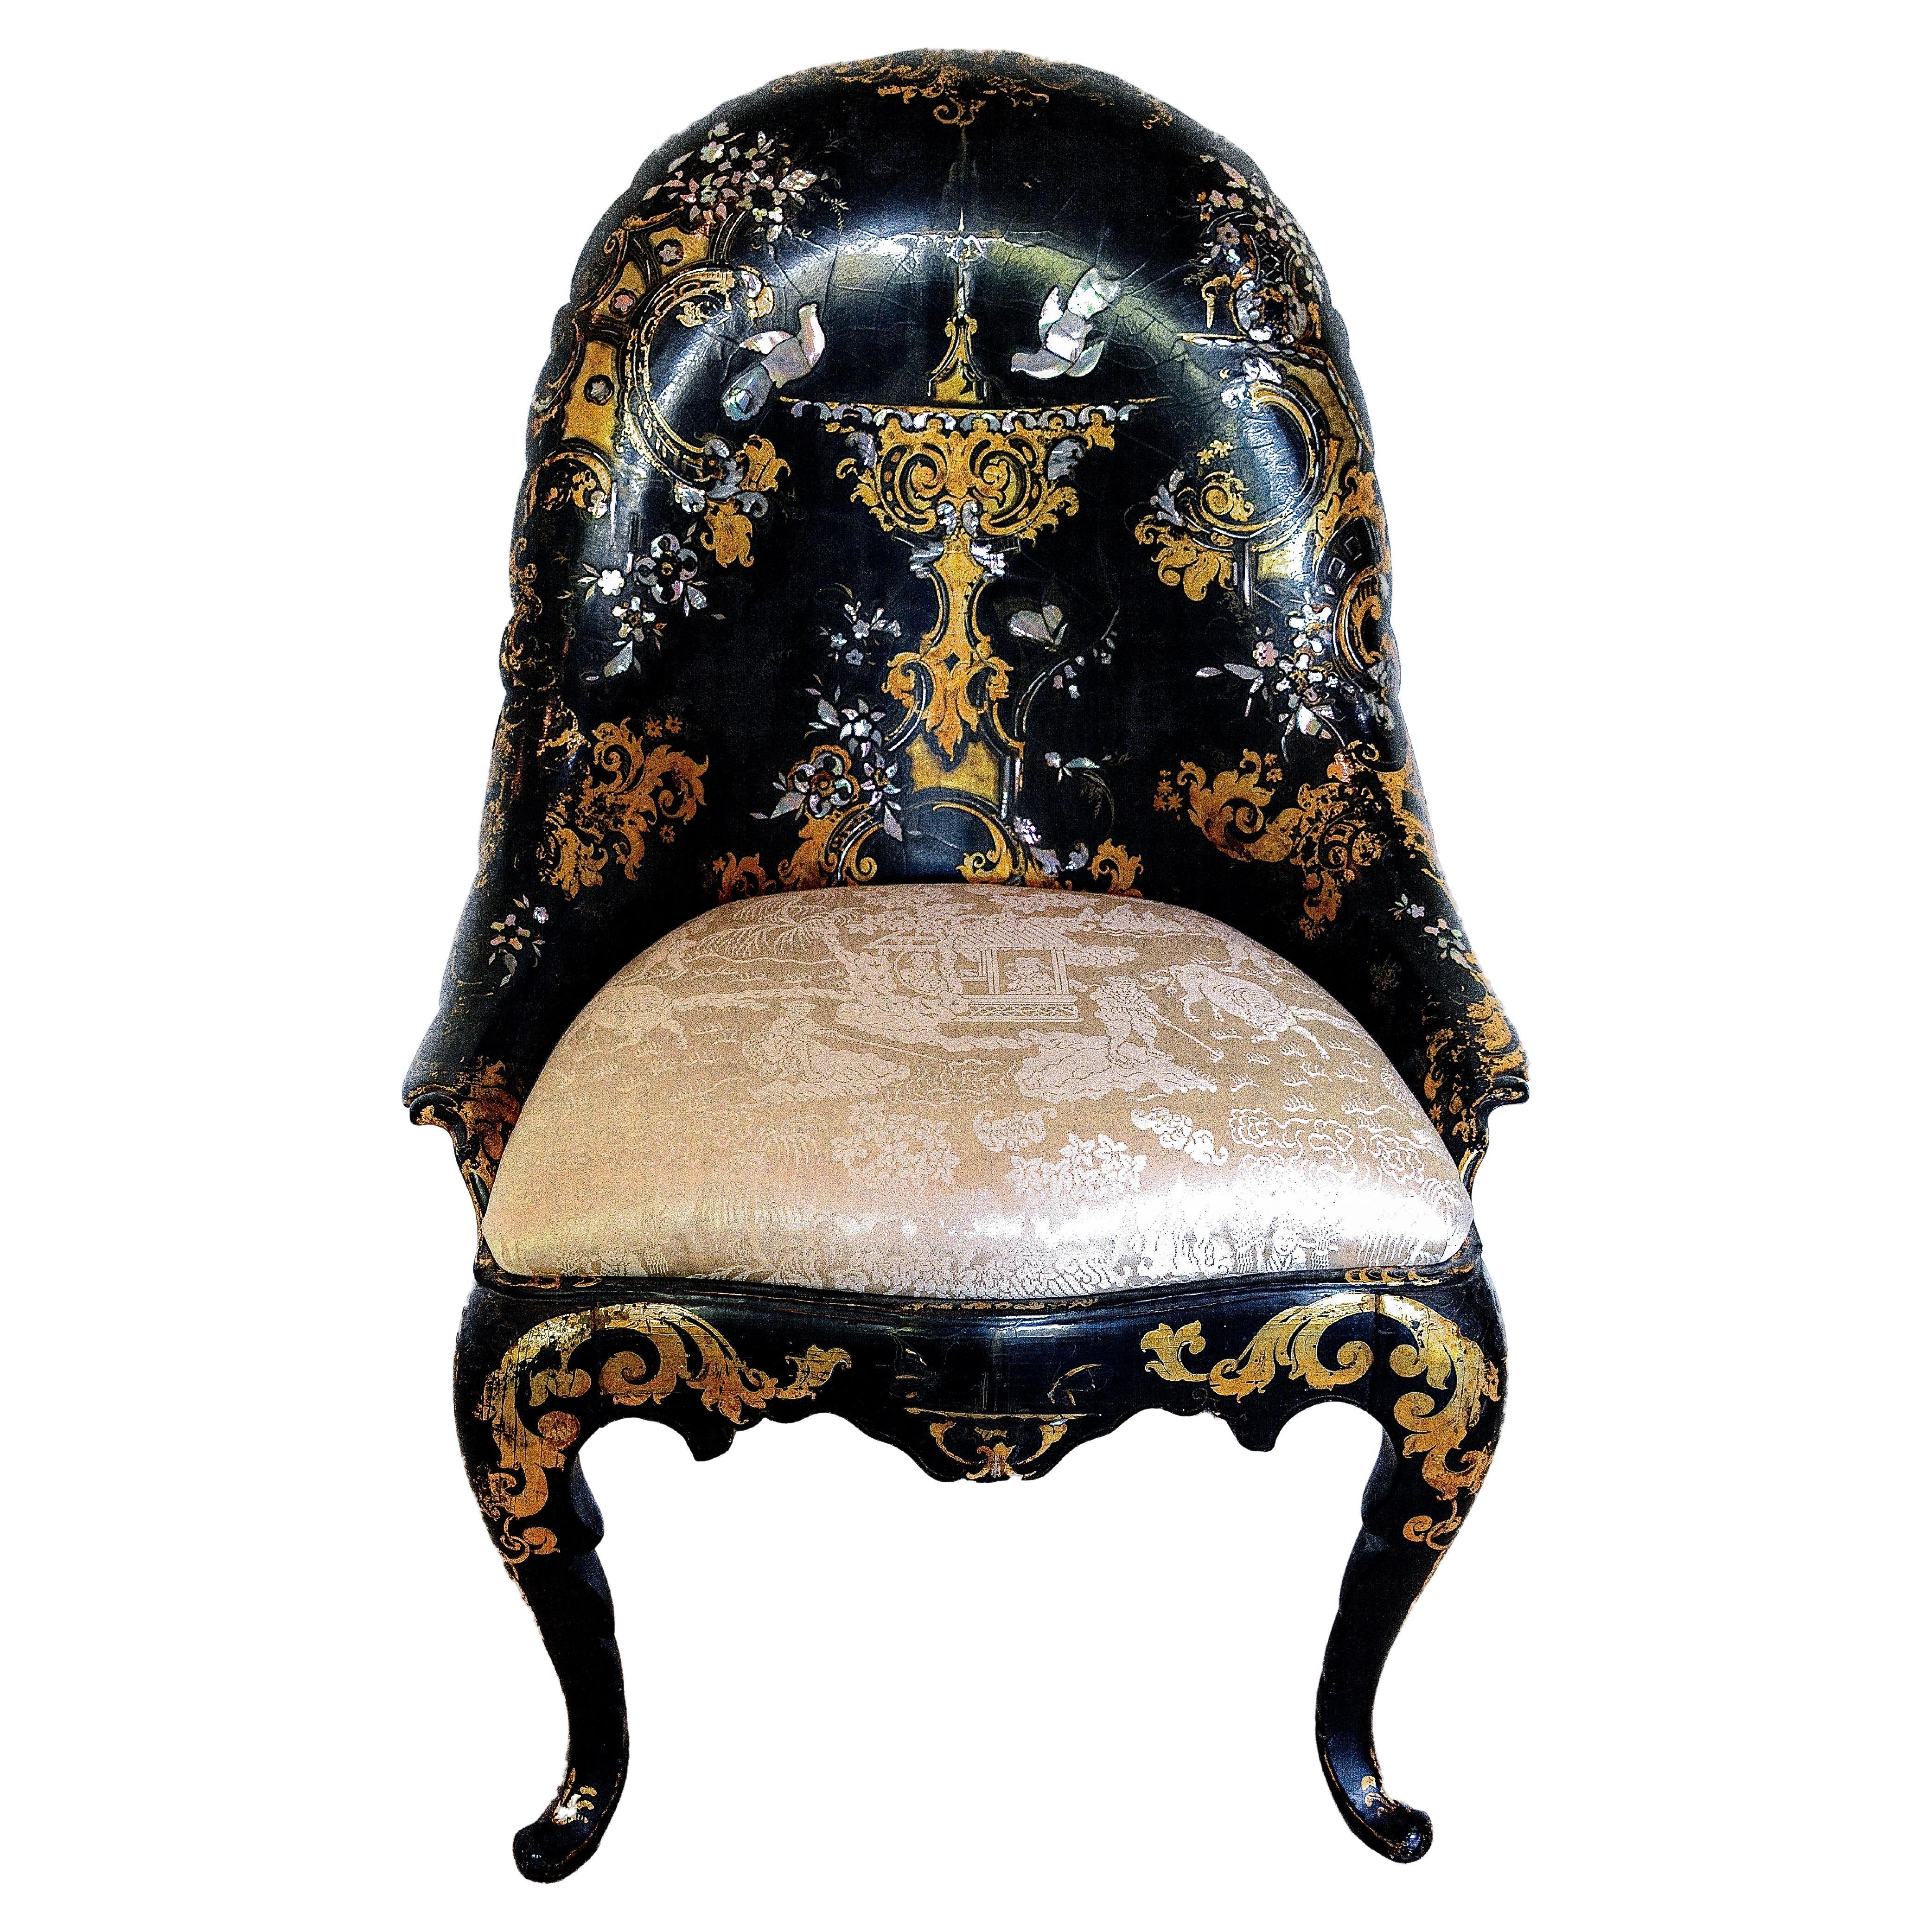 Viktorianischer Mache-Stuhl mit Intarsien aus Perlmutt und vergoldetem Papier aus dem 19. Jahrhundert